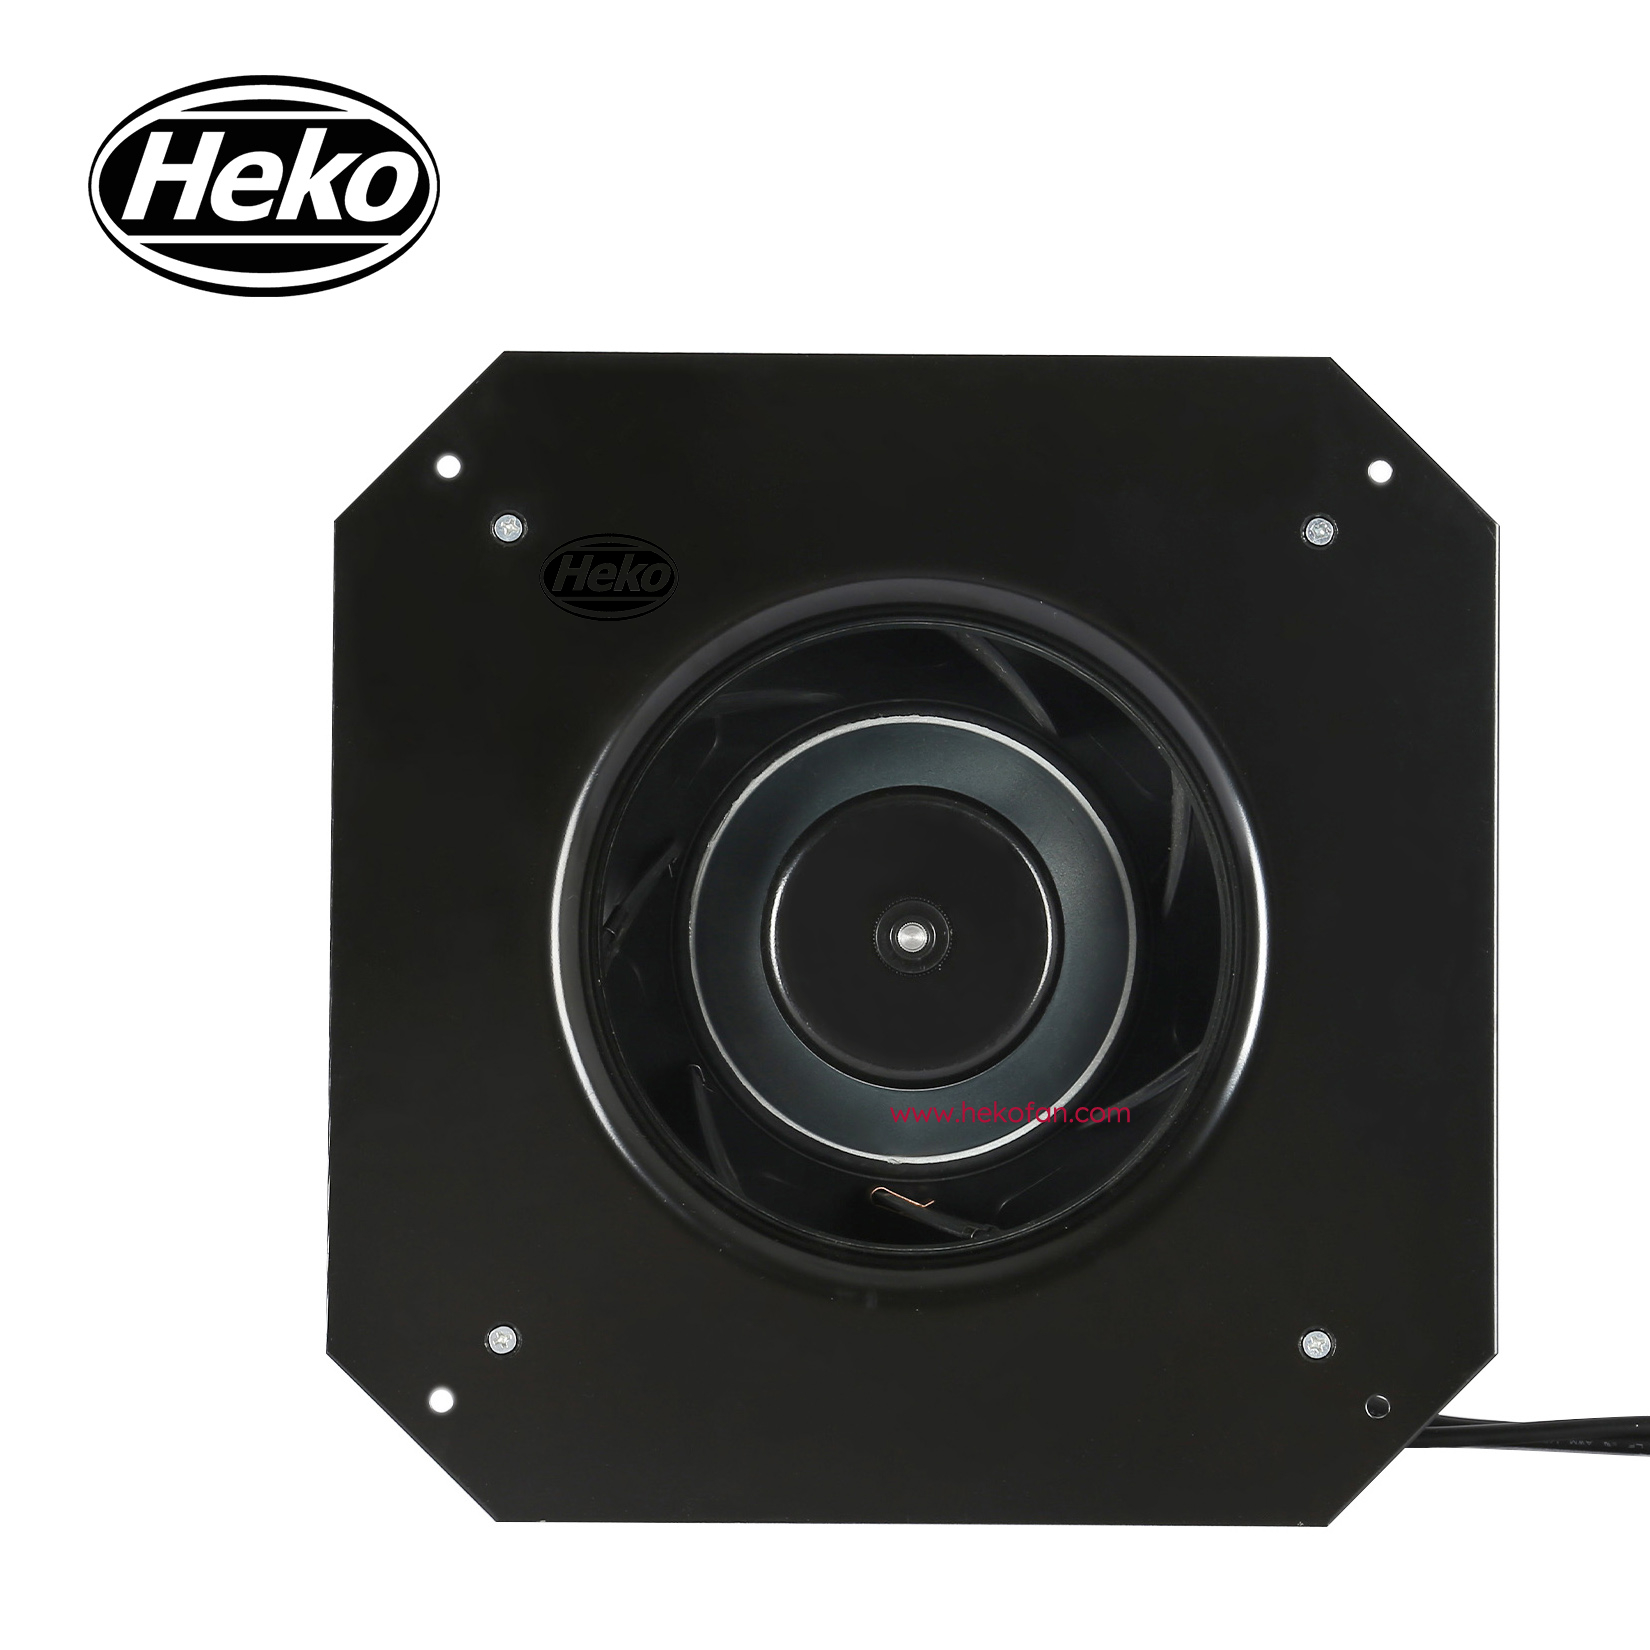 Ventilador centrífugo enfriador de aire de bajo ruido HEKO EC190mm